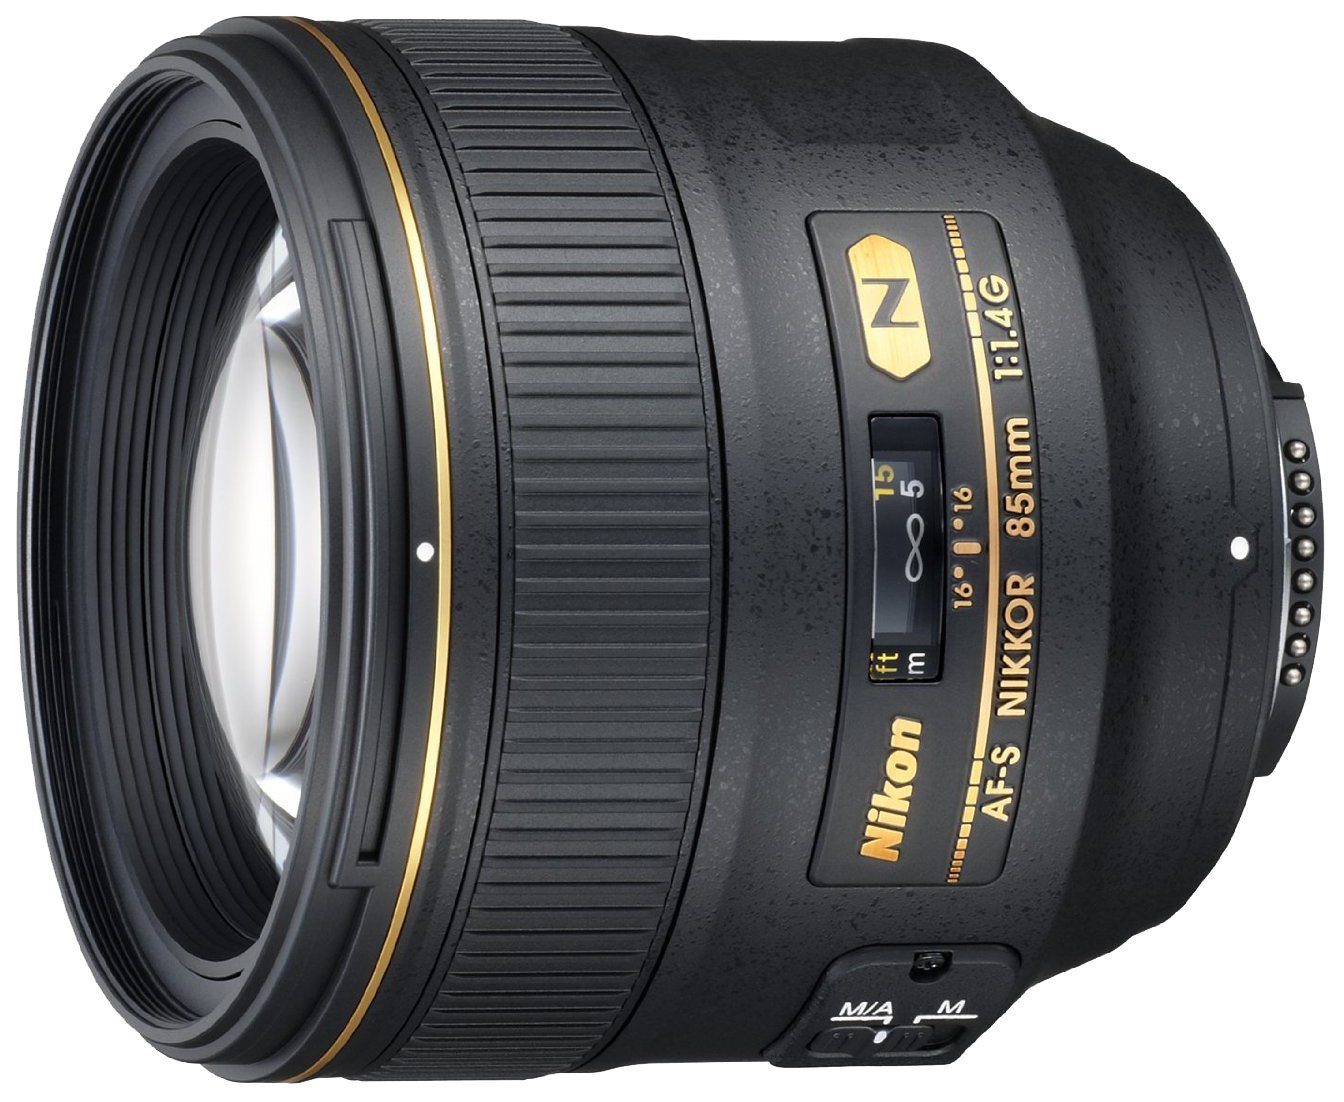 Ống kính Nikon AF-S FX NIKKOR 85mm f/1.4G Lens with Auto Focus for Nikon DSLR Cameras